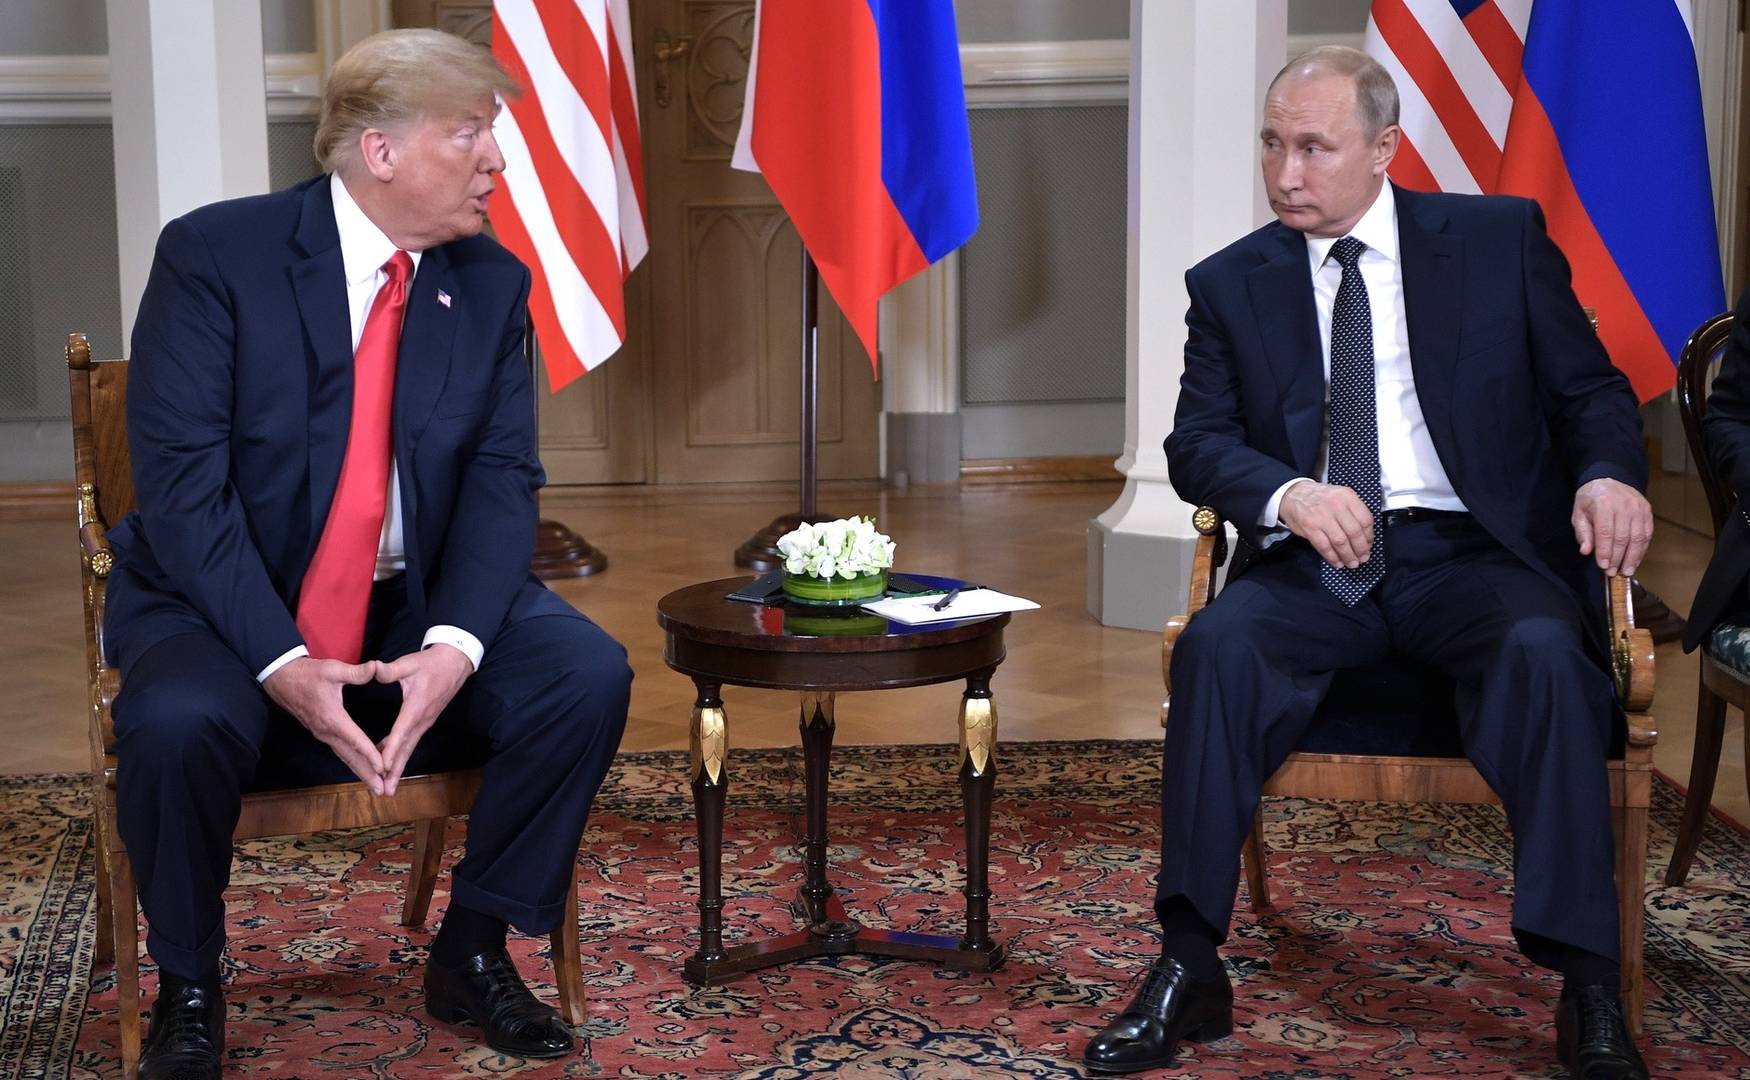 Трамп и Путин. Встреча двух президентов